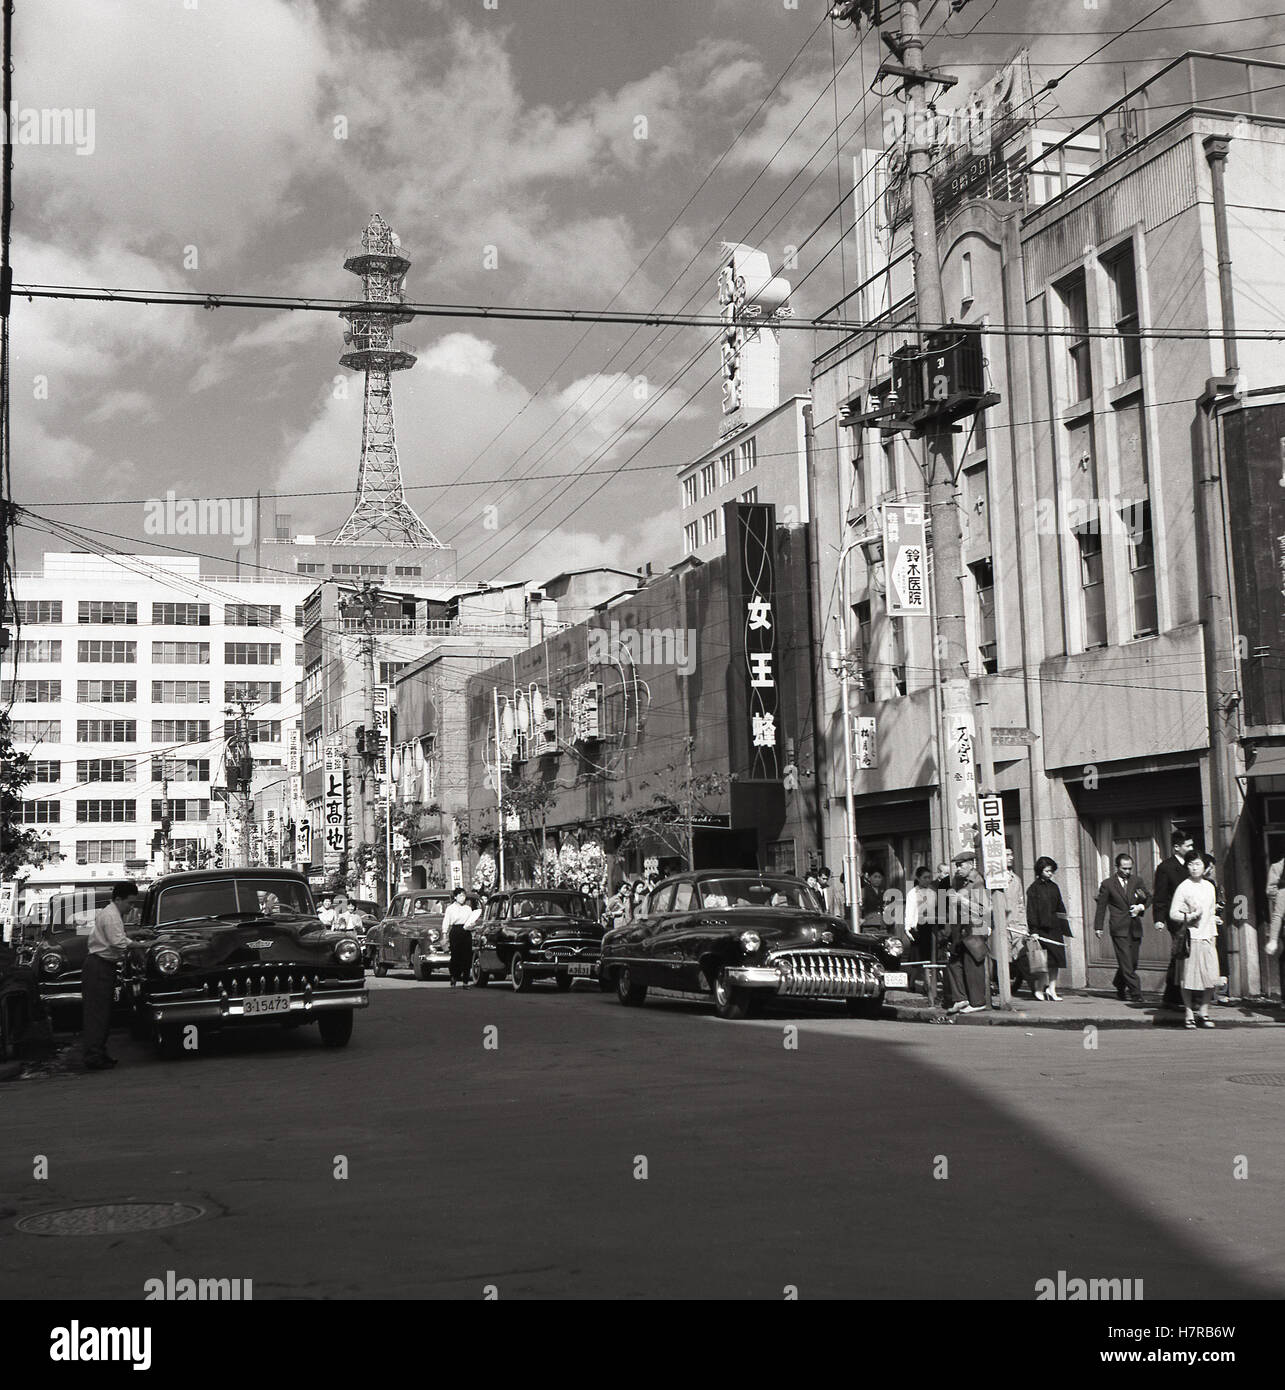 Années 1950, historique, côté scène de rue, Tokyo, Japon, montrant les grandes voitures de style américain de l'époque et des télécommunications tour en arrière-plan. Banque D'Images